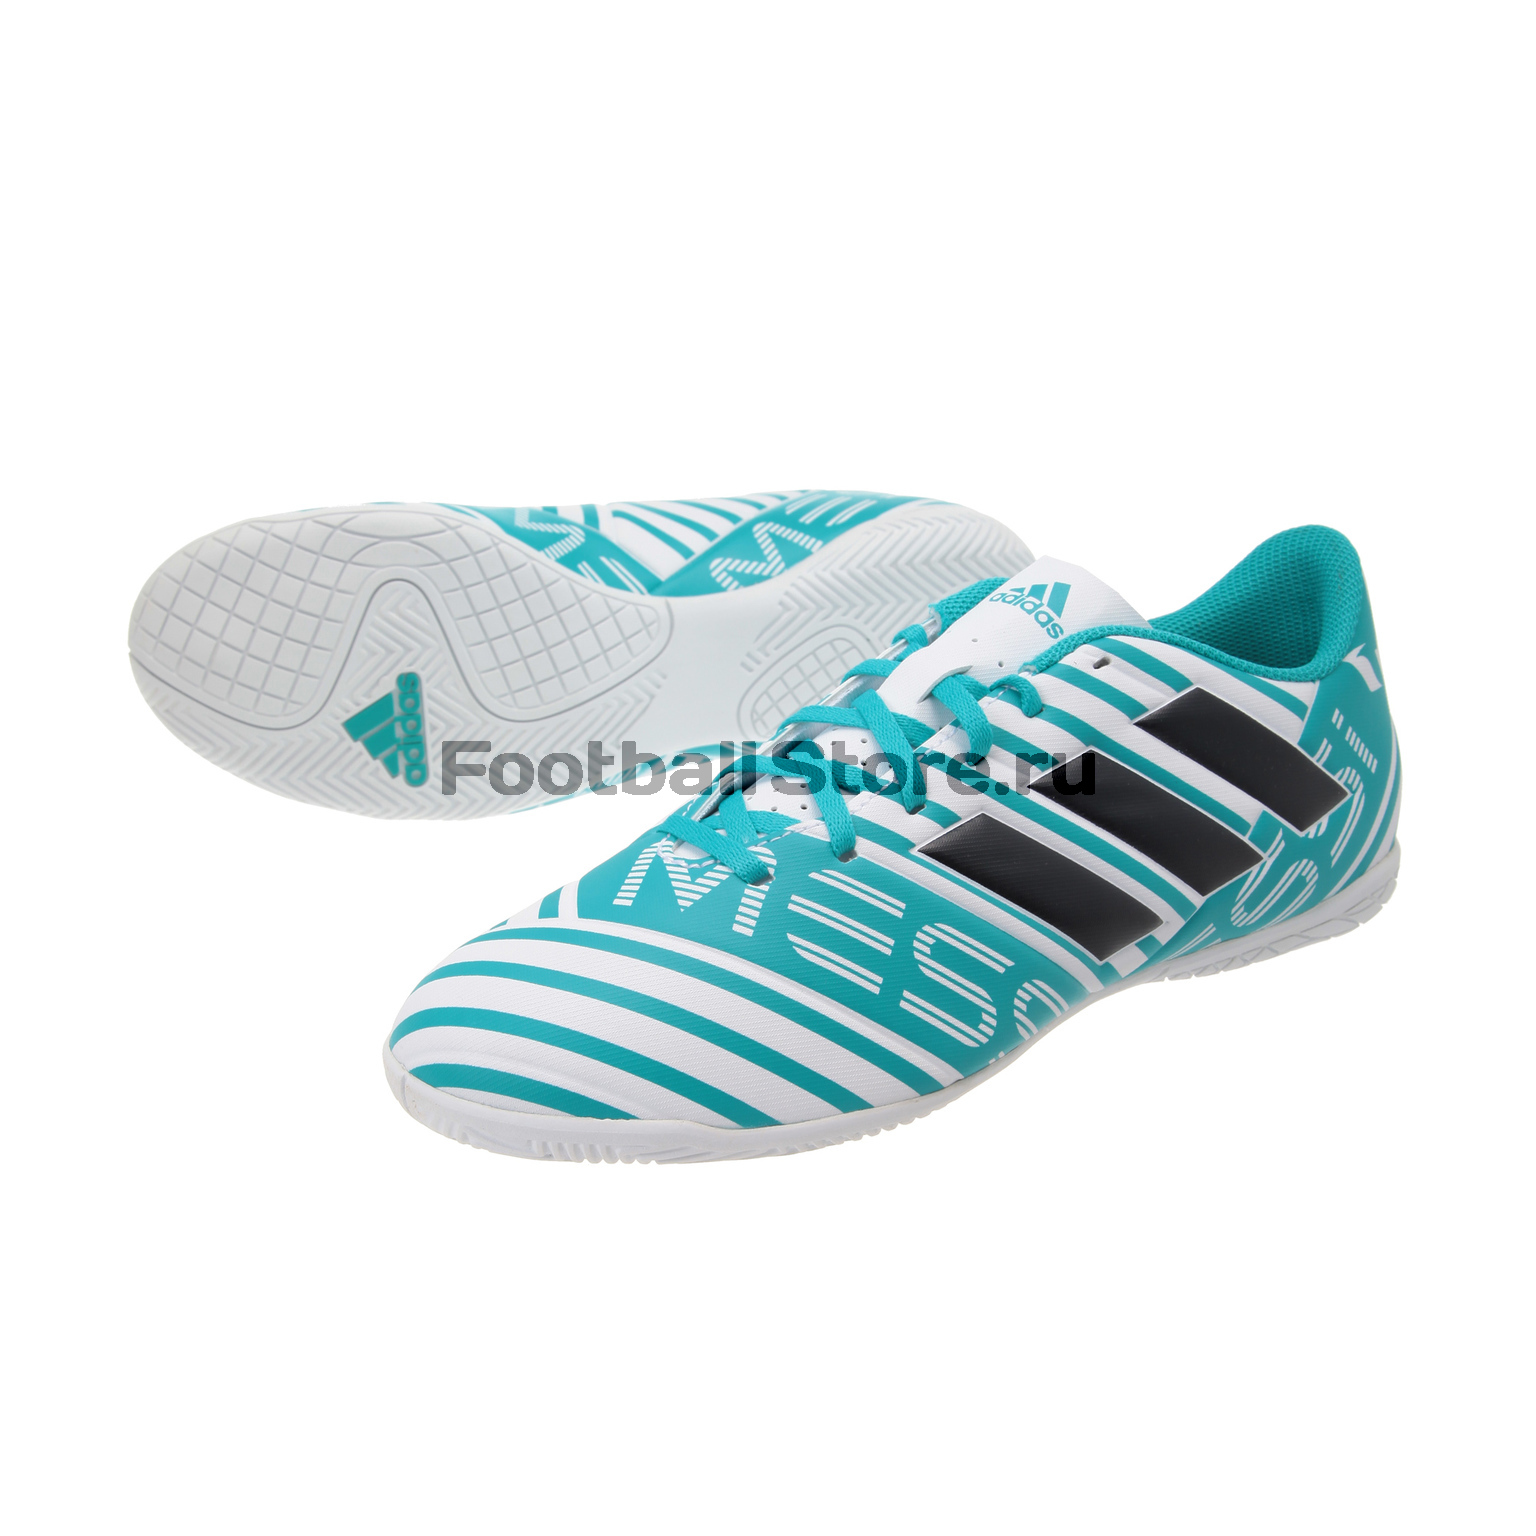 Обувь для зала Adidas Nemeziz Messi 17.4 IN CG2972